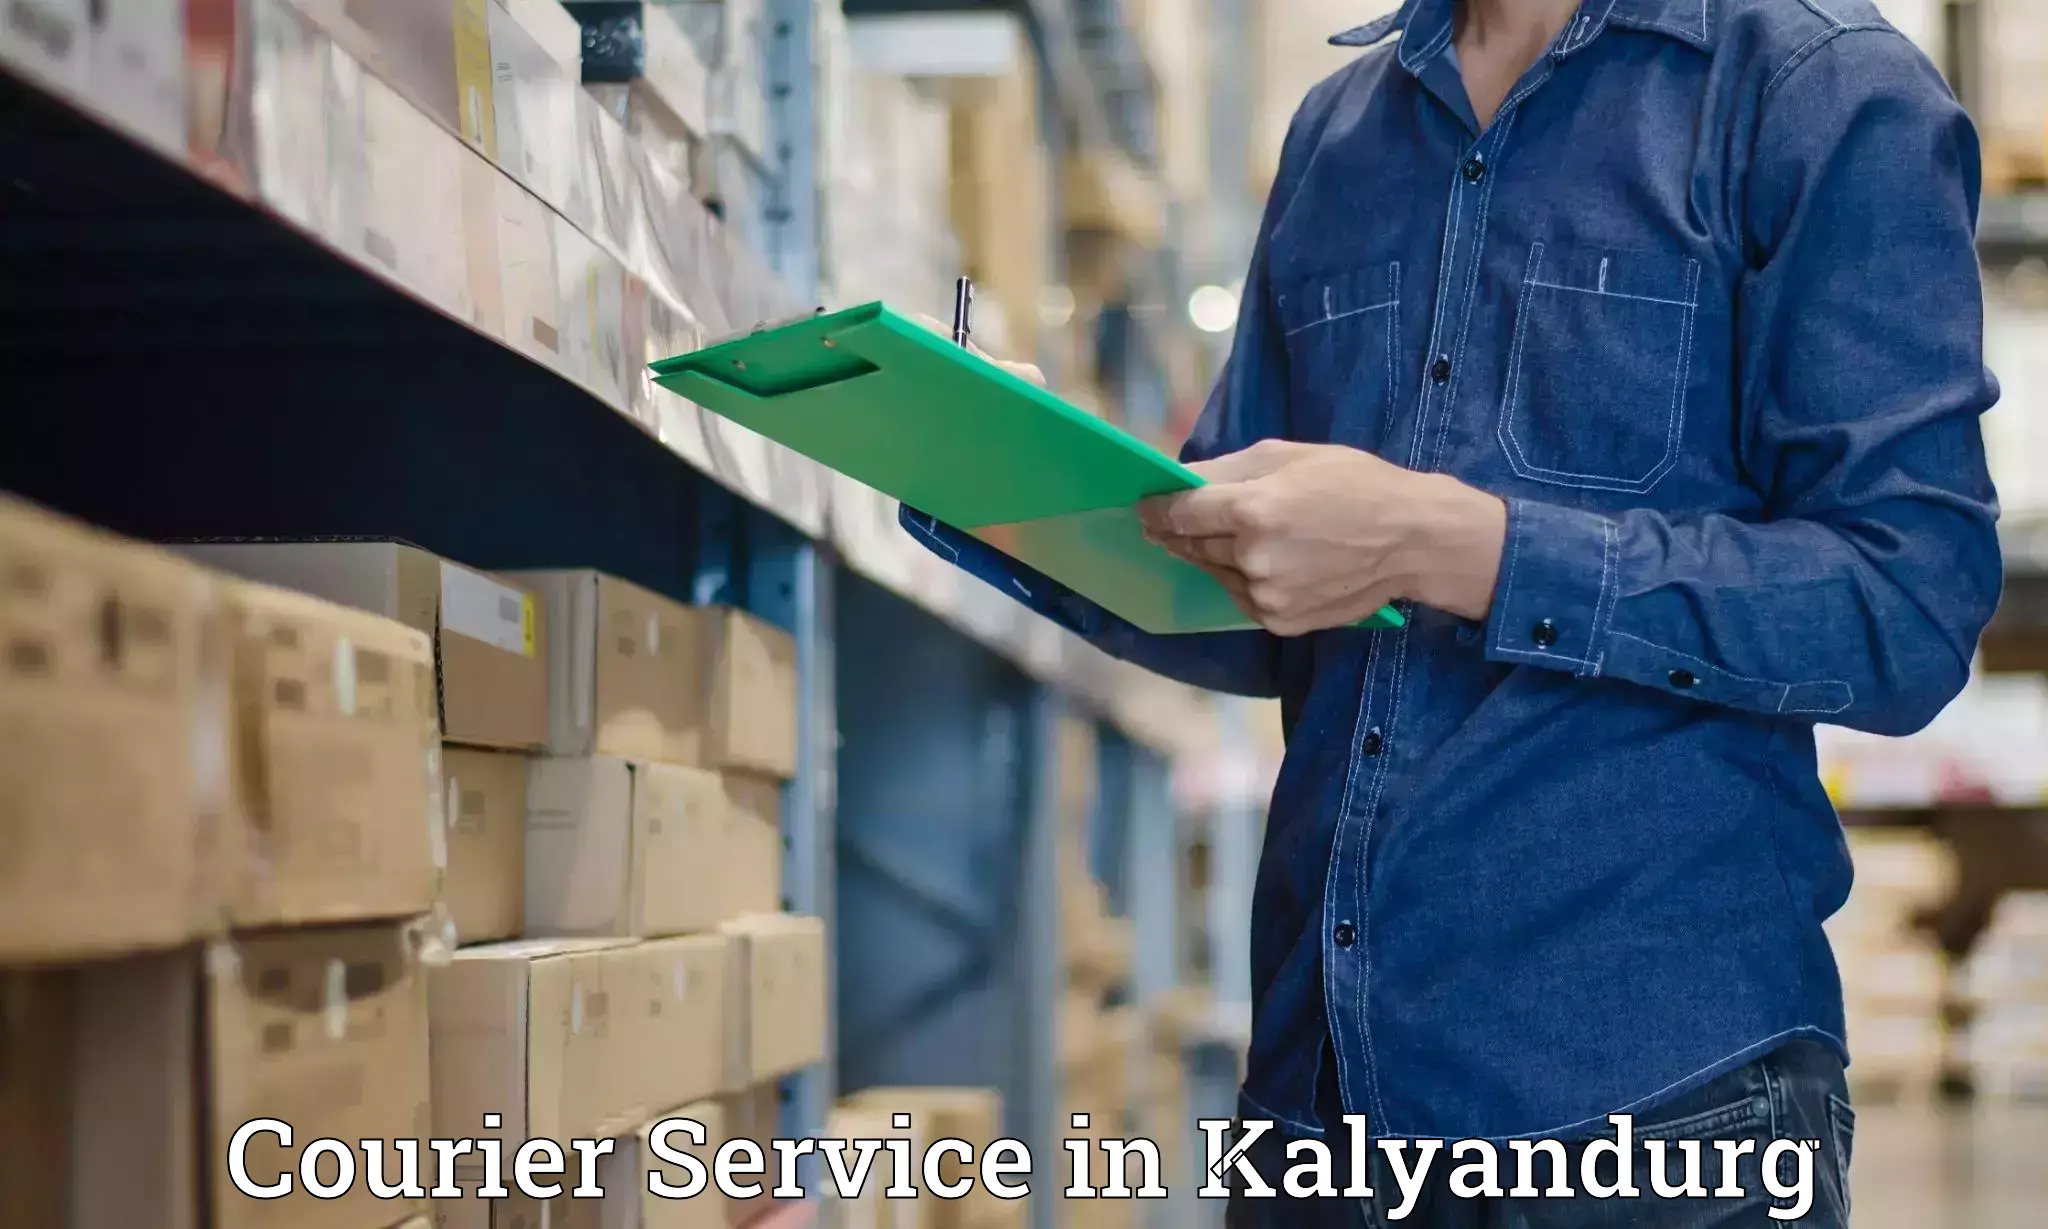 Supply chain efficiency in Kalyandurg